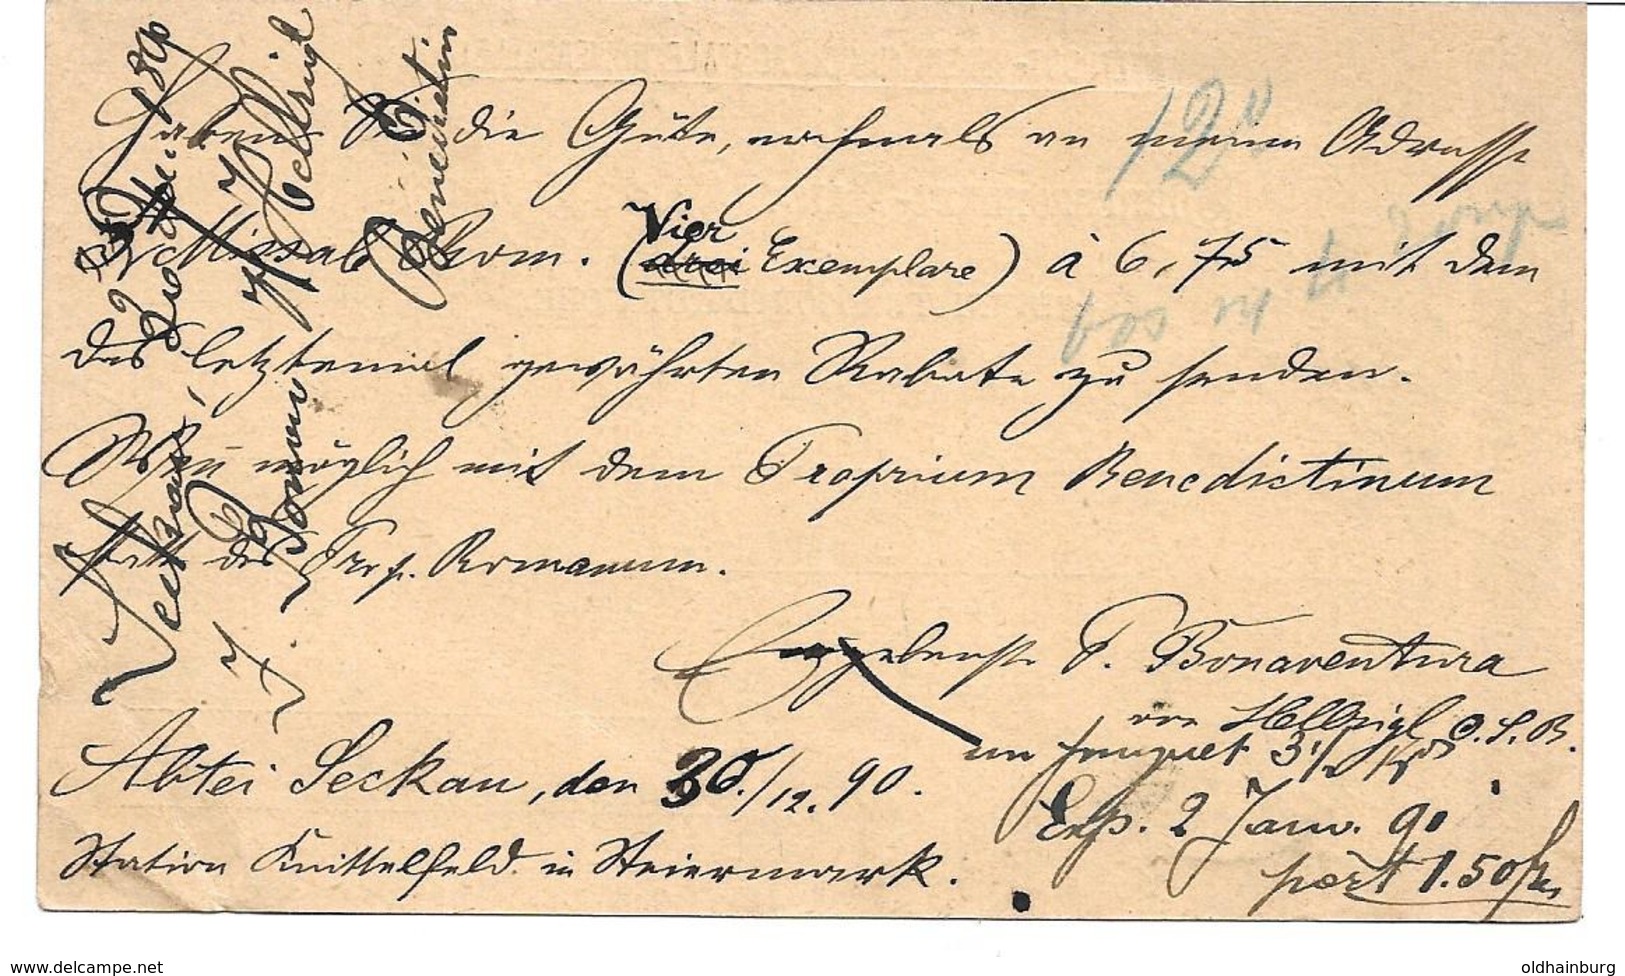 3075f: Postkarte Von Der Abtei Seckau Nach Belgien 30.12.1890 (Knick Rechts Unten) - Knittelfeld